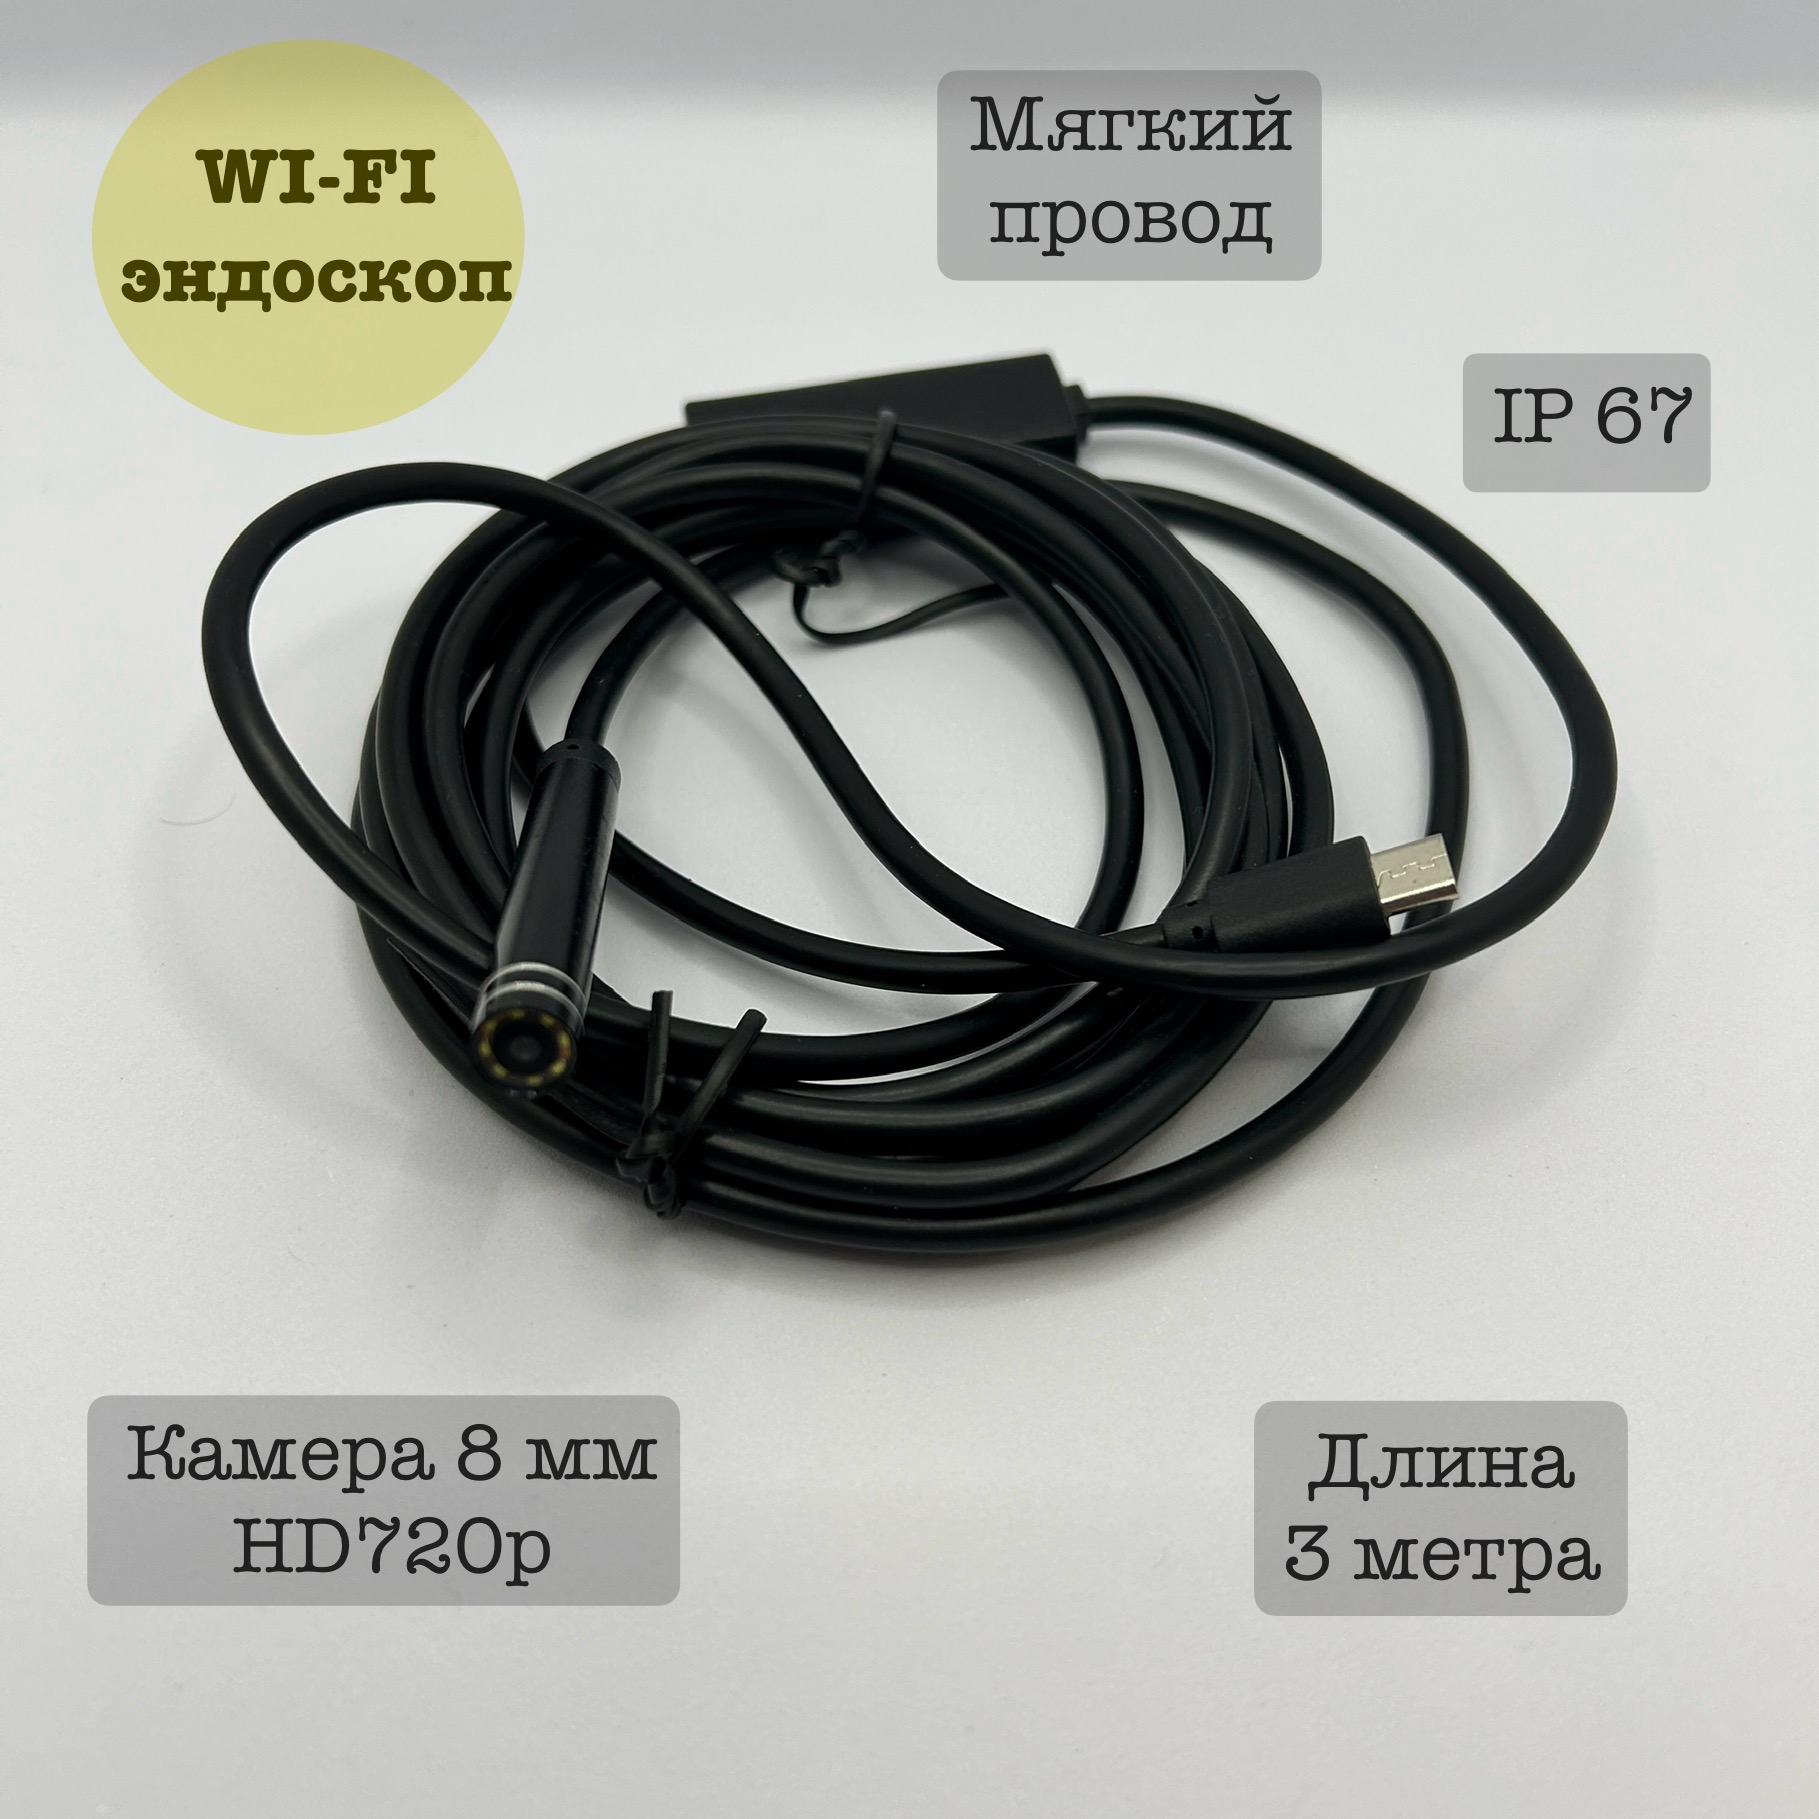 Эндоскоп Wi-fi для автомобиля YPC99-5, 3 метра, мягкий мягкий магнит love